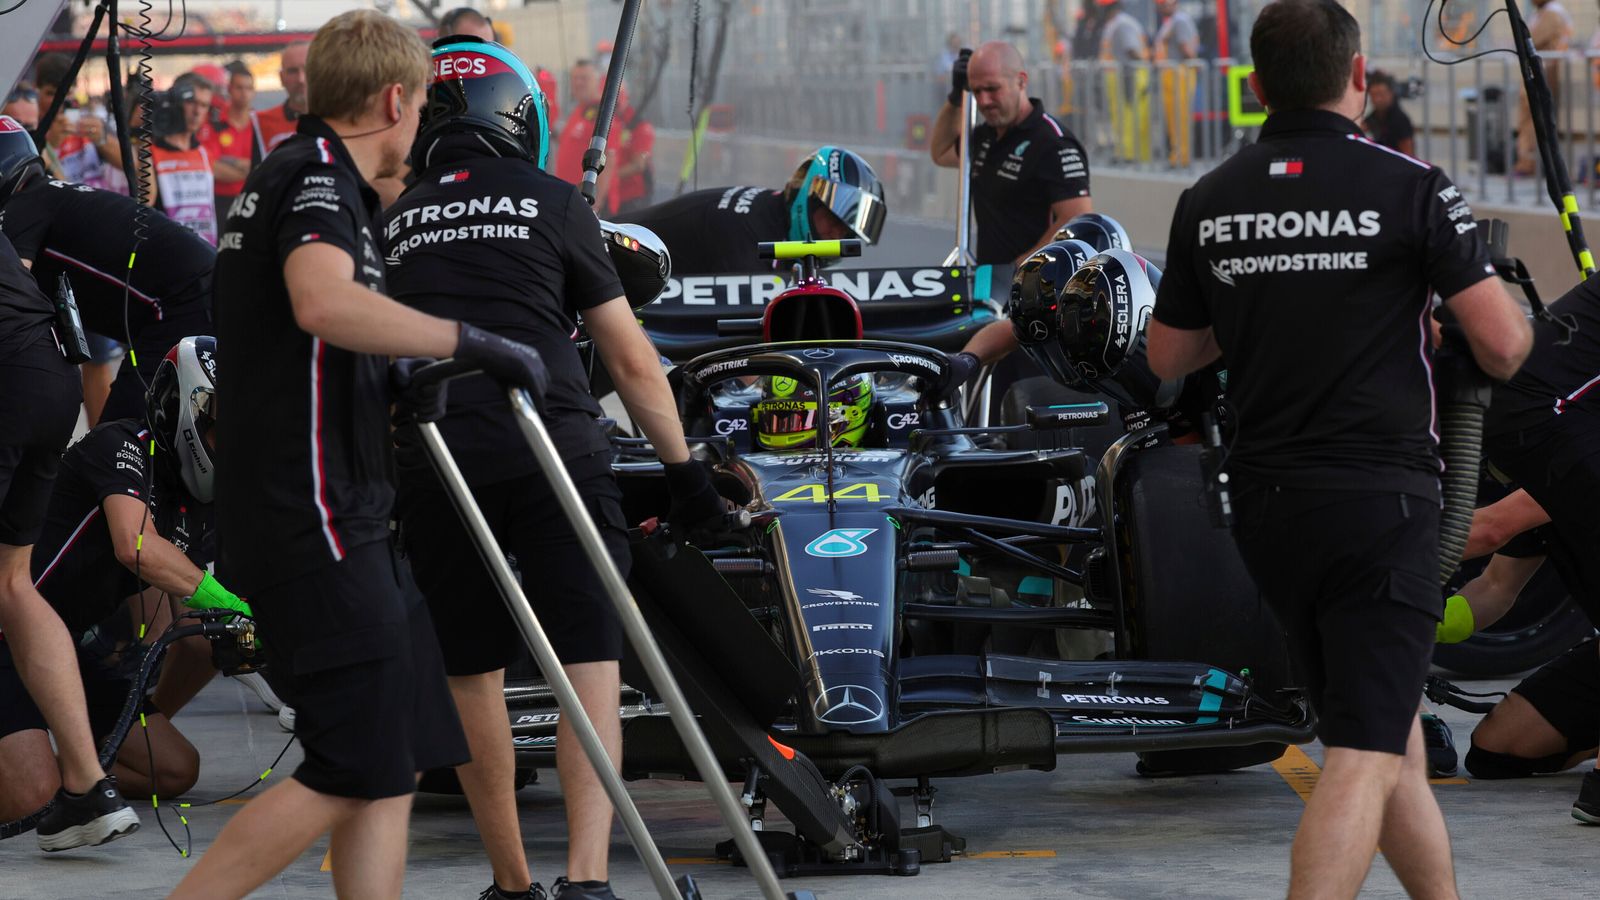 GP du Qatar : la FIA applique la règle des trois arrêts aux stands pour la course en raison de problèmes de sécurité concernant les pneus